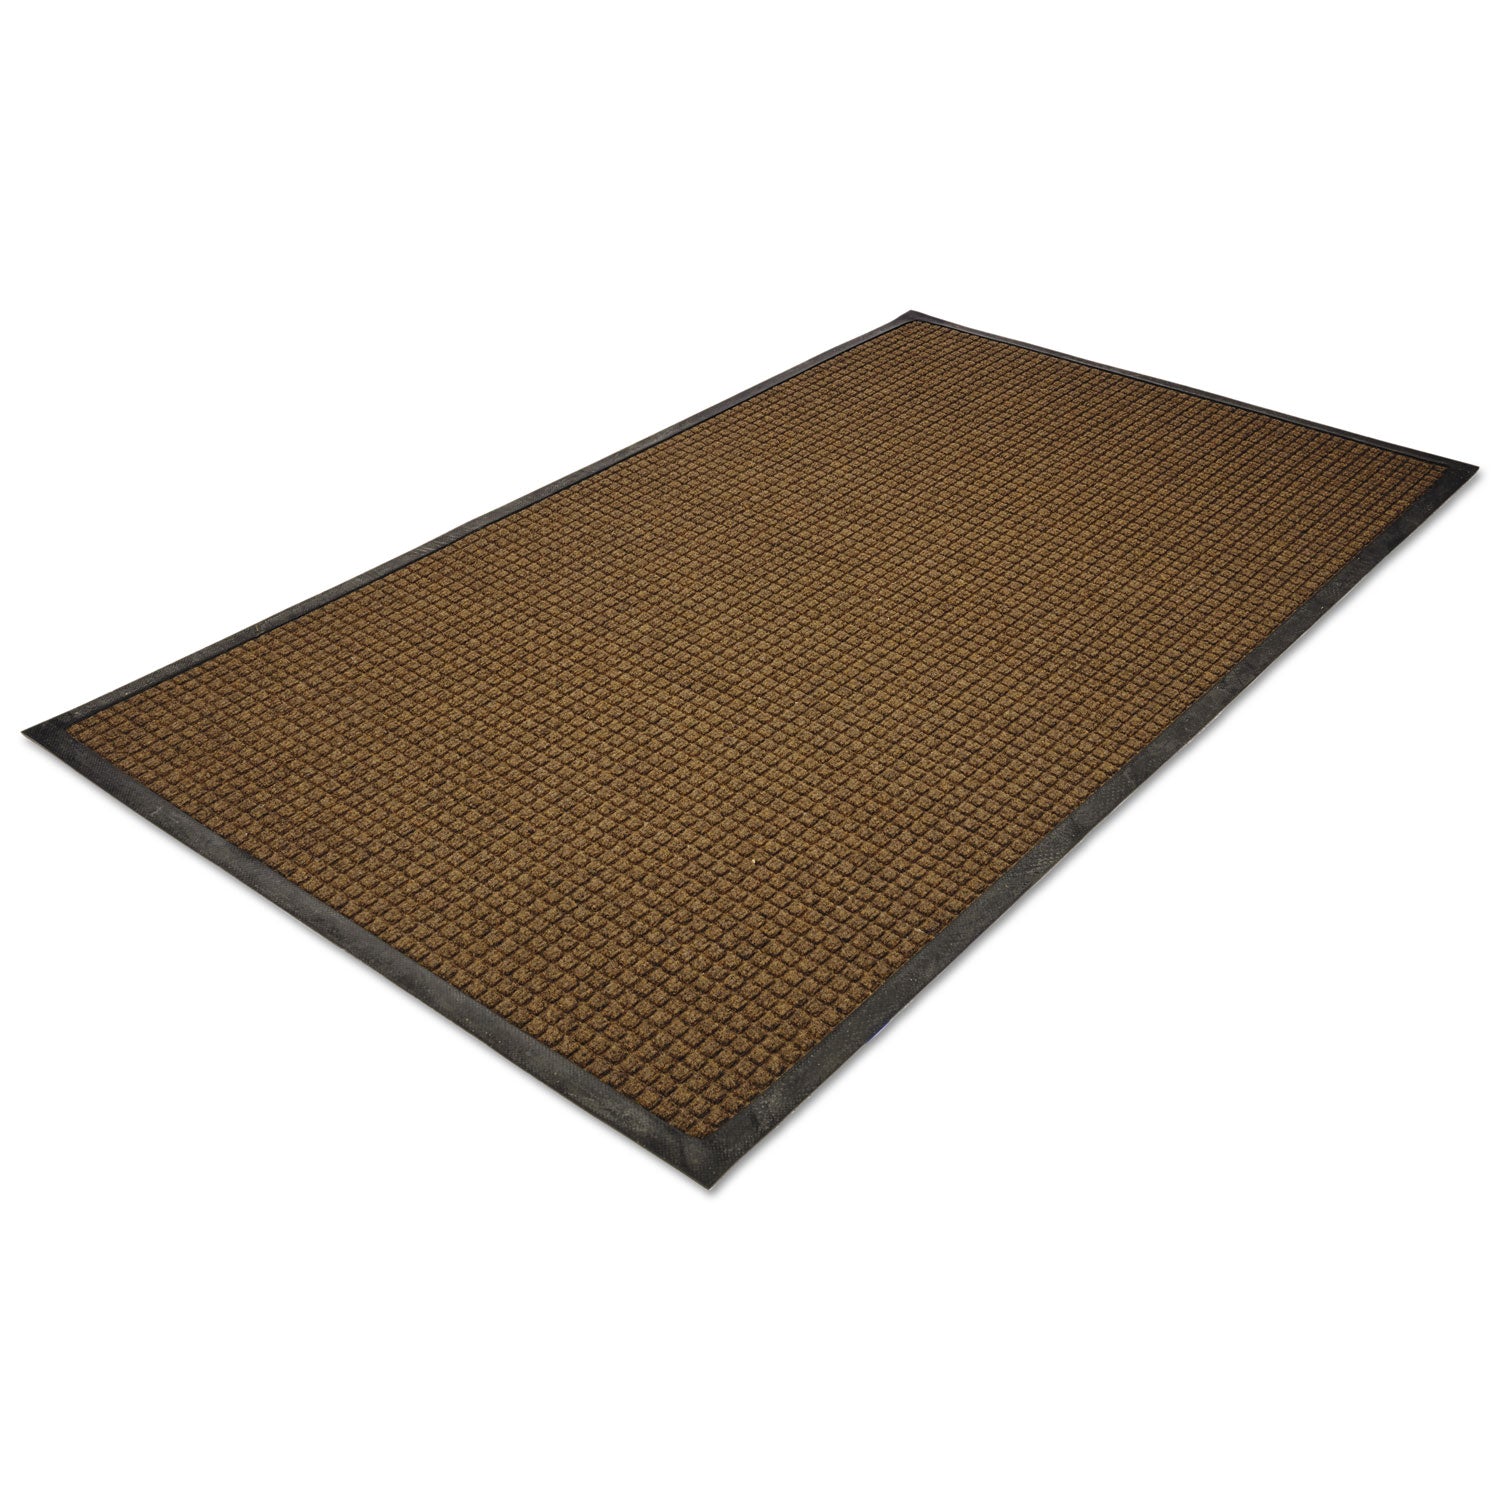 WaterGuard Indoor/Outdoor Scraper Mat, 48 x 72, Brown - 